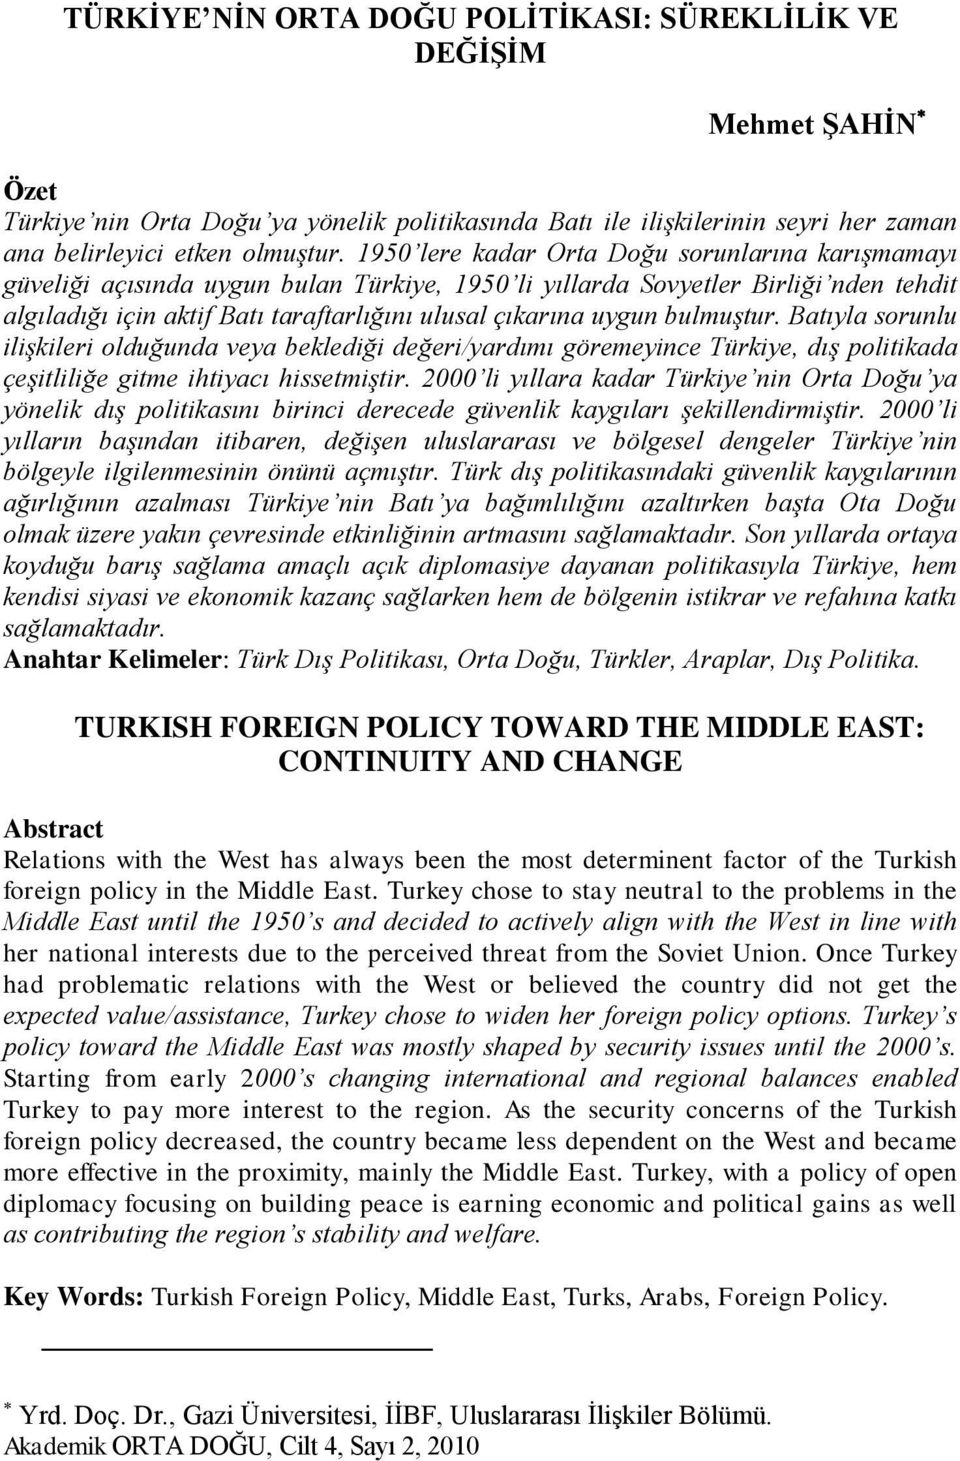 bulmuştur. Batıyla sorunlu ilişkileri olduğunda veya beklediği değeri/yardımı göremeyince Türkiye, dış politikada çeşitliliğe gitme ihtiyacı hissetmiştir.